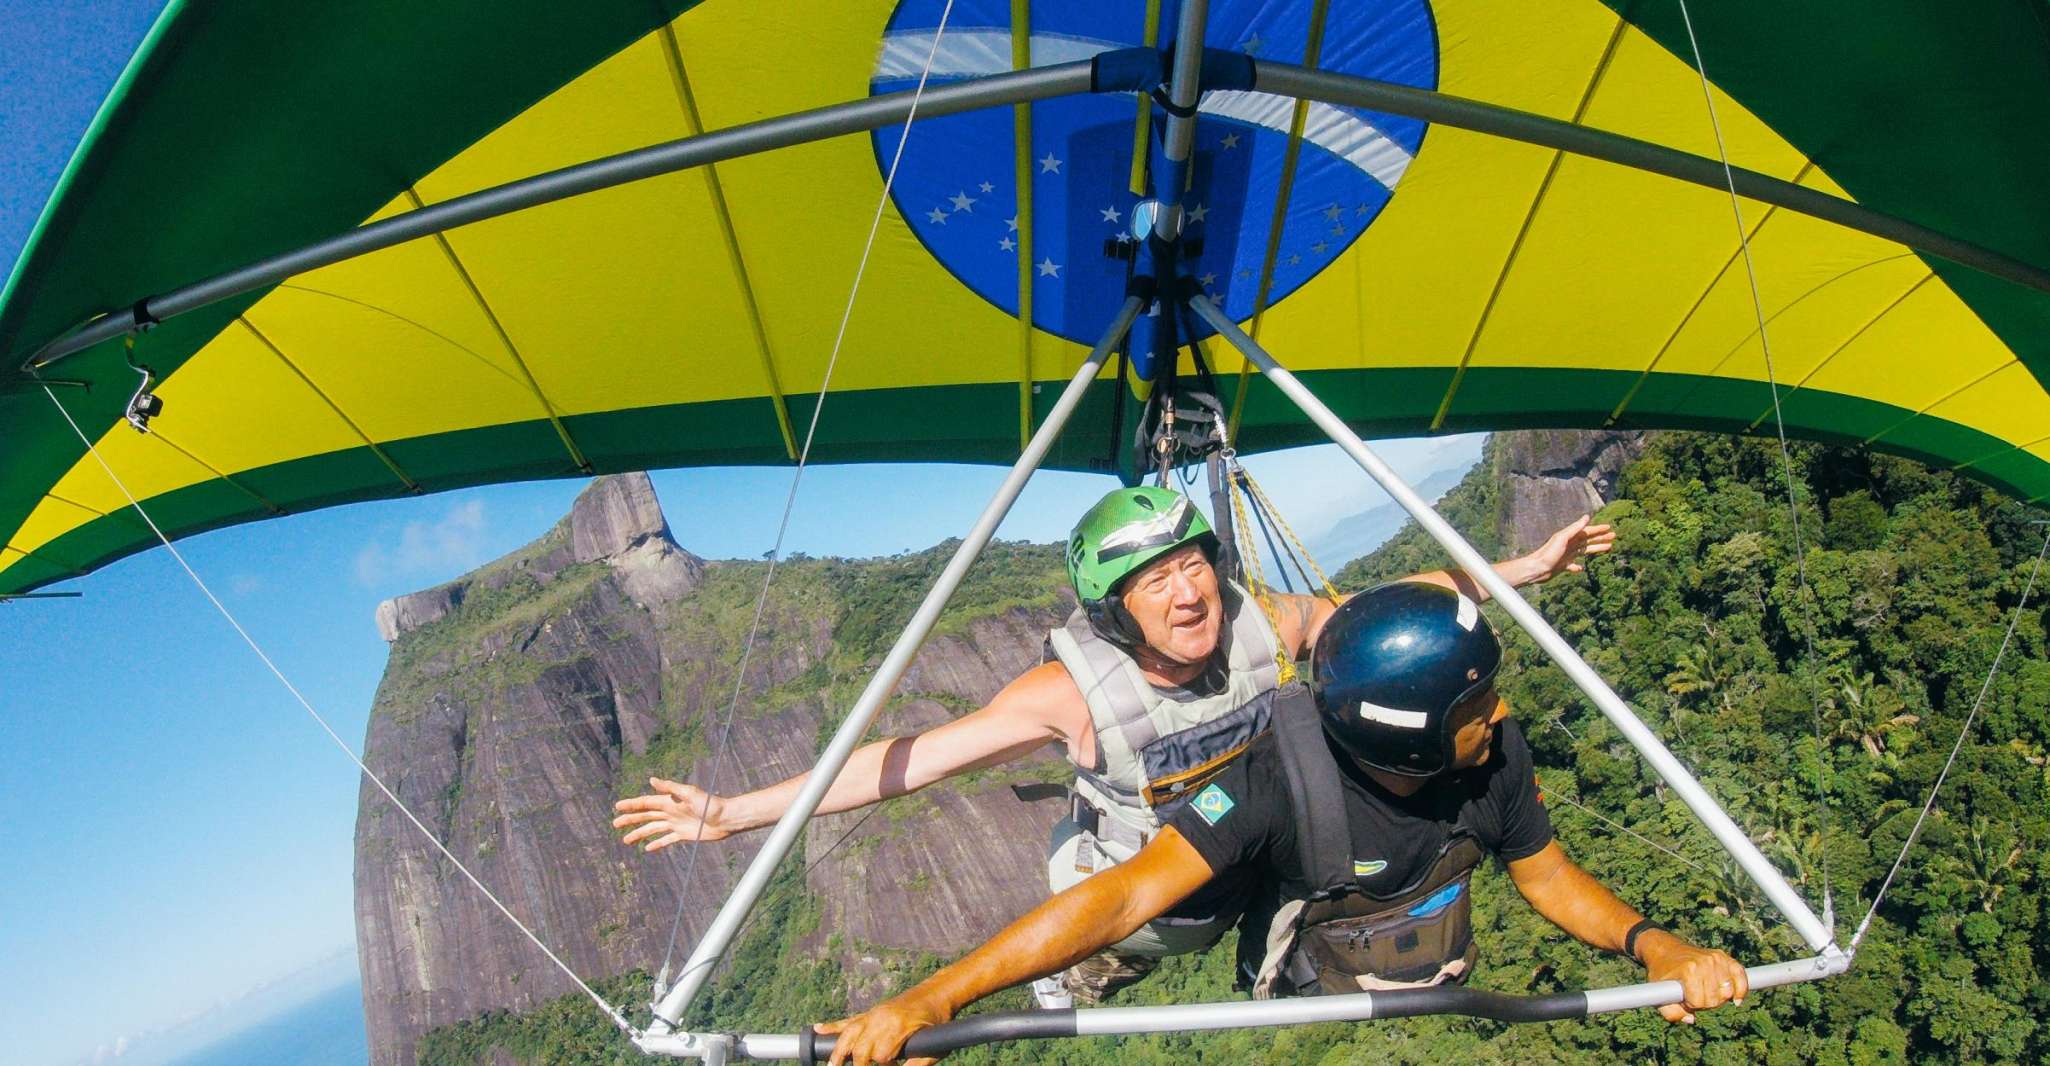 Rio de Janeiro, Hang Gliding Tandem Flight - Housity